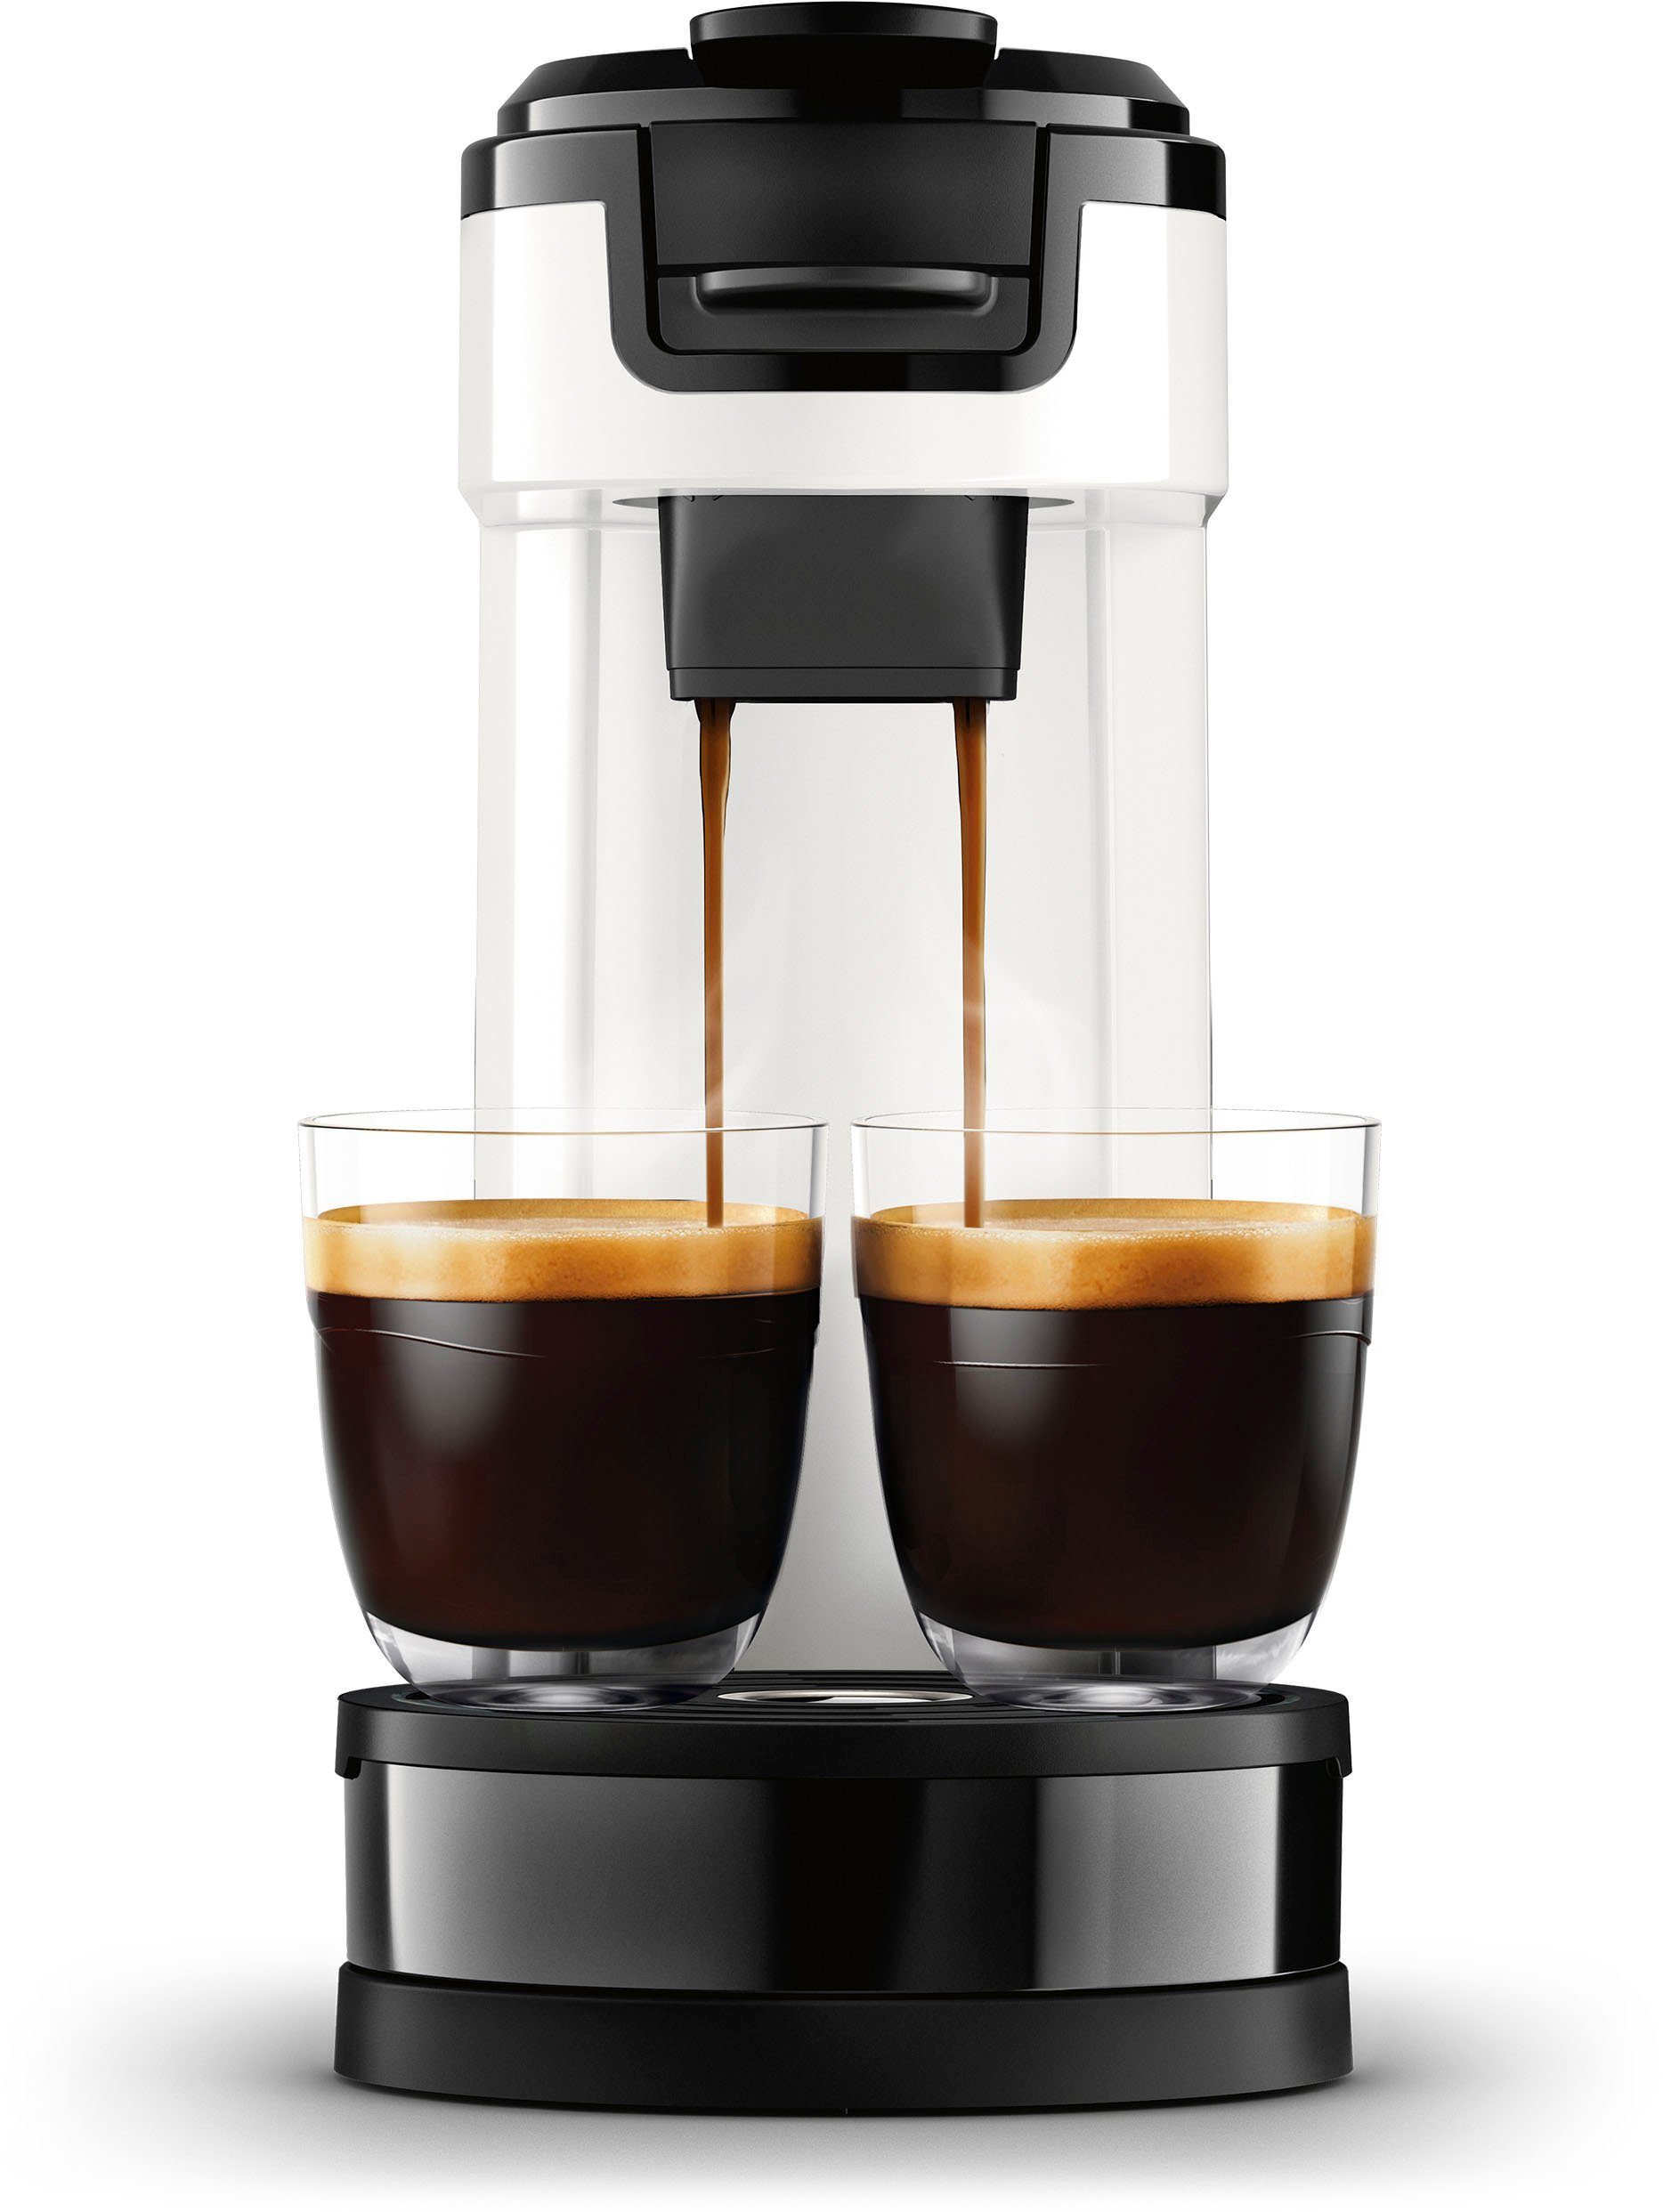 Senseo 1l Wert Kaffeepadmaschine Philips Switch 9,90 inkl. Kaffeekanne, im Kaffeepaddose € UVP HD6592/04, von